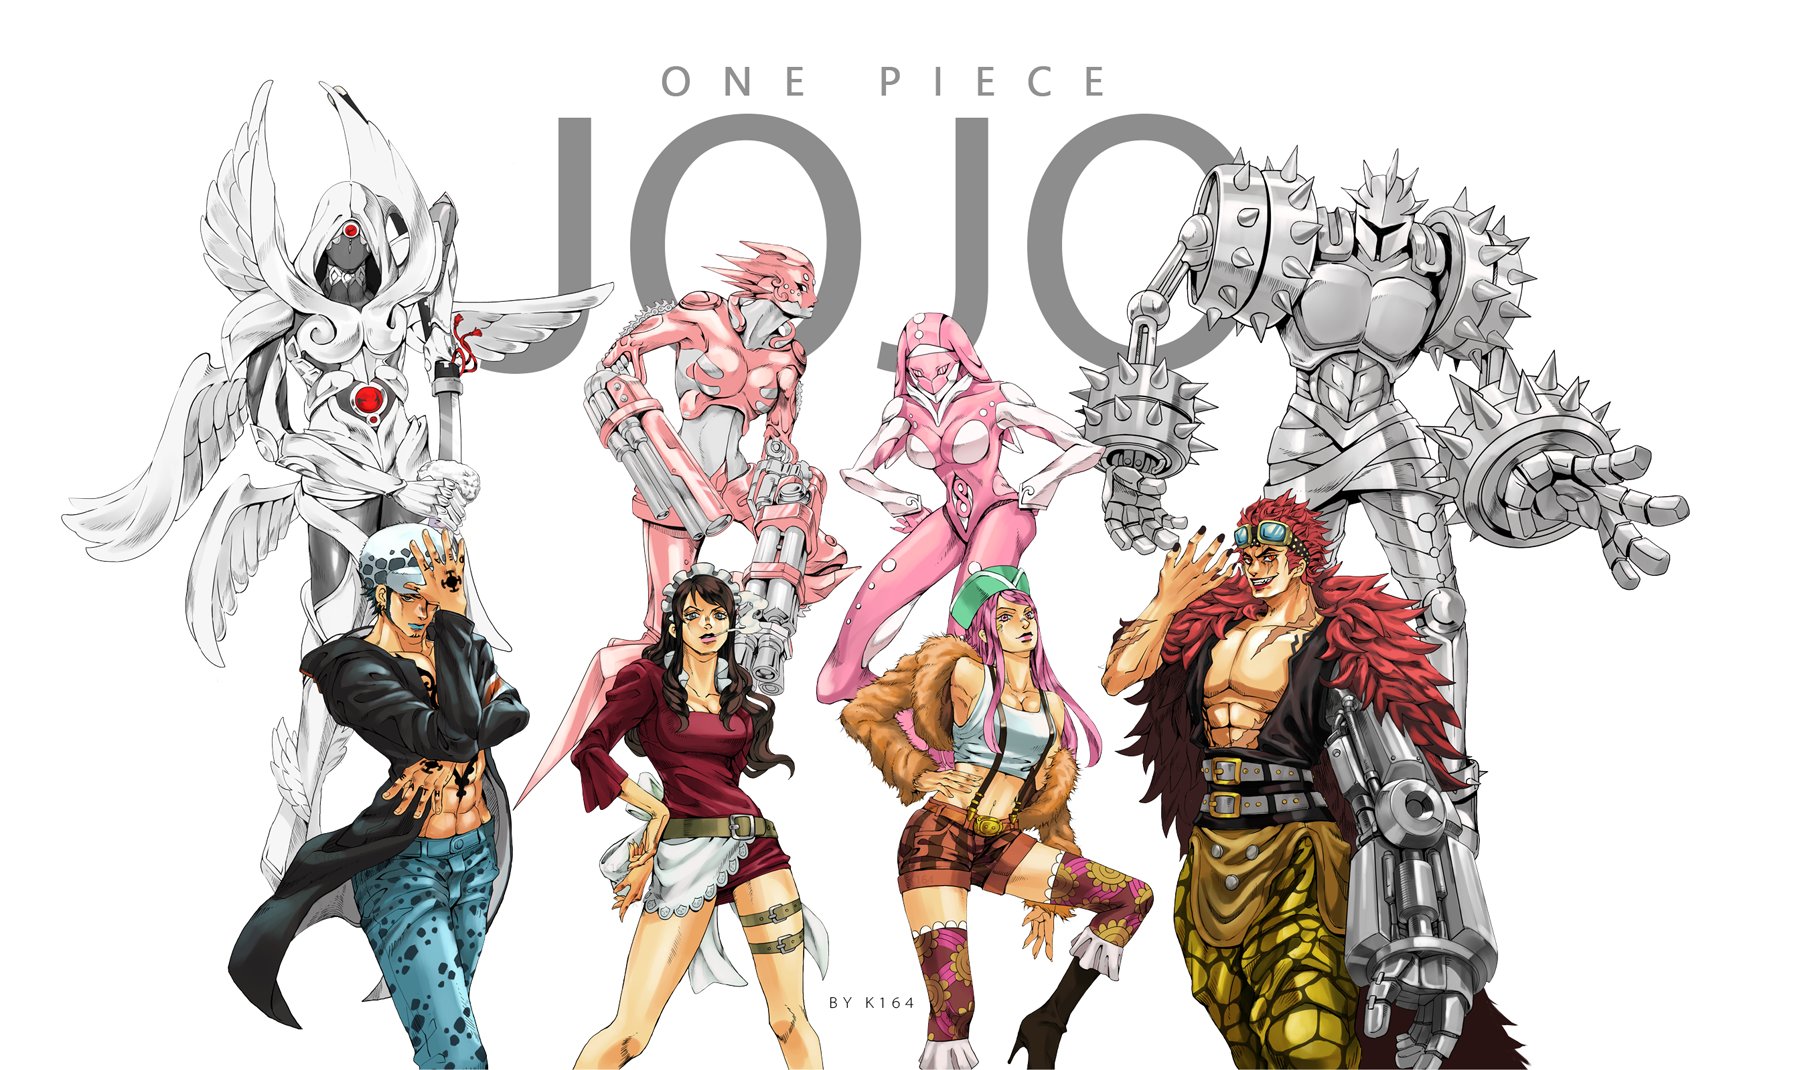 Artista fez um criativo crossover entre One Piece e JoJo's Bizarre Adventure